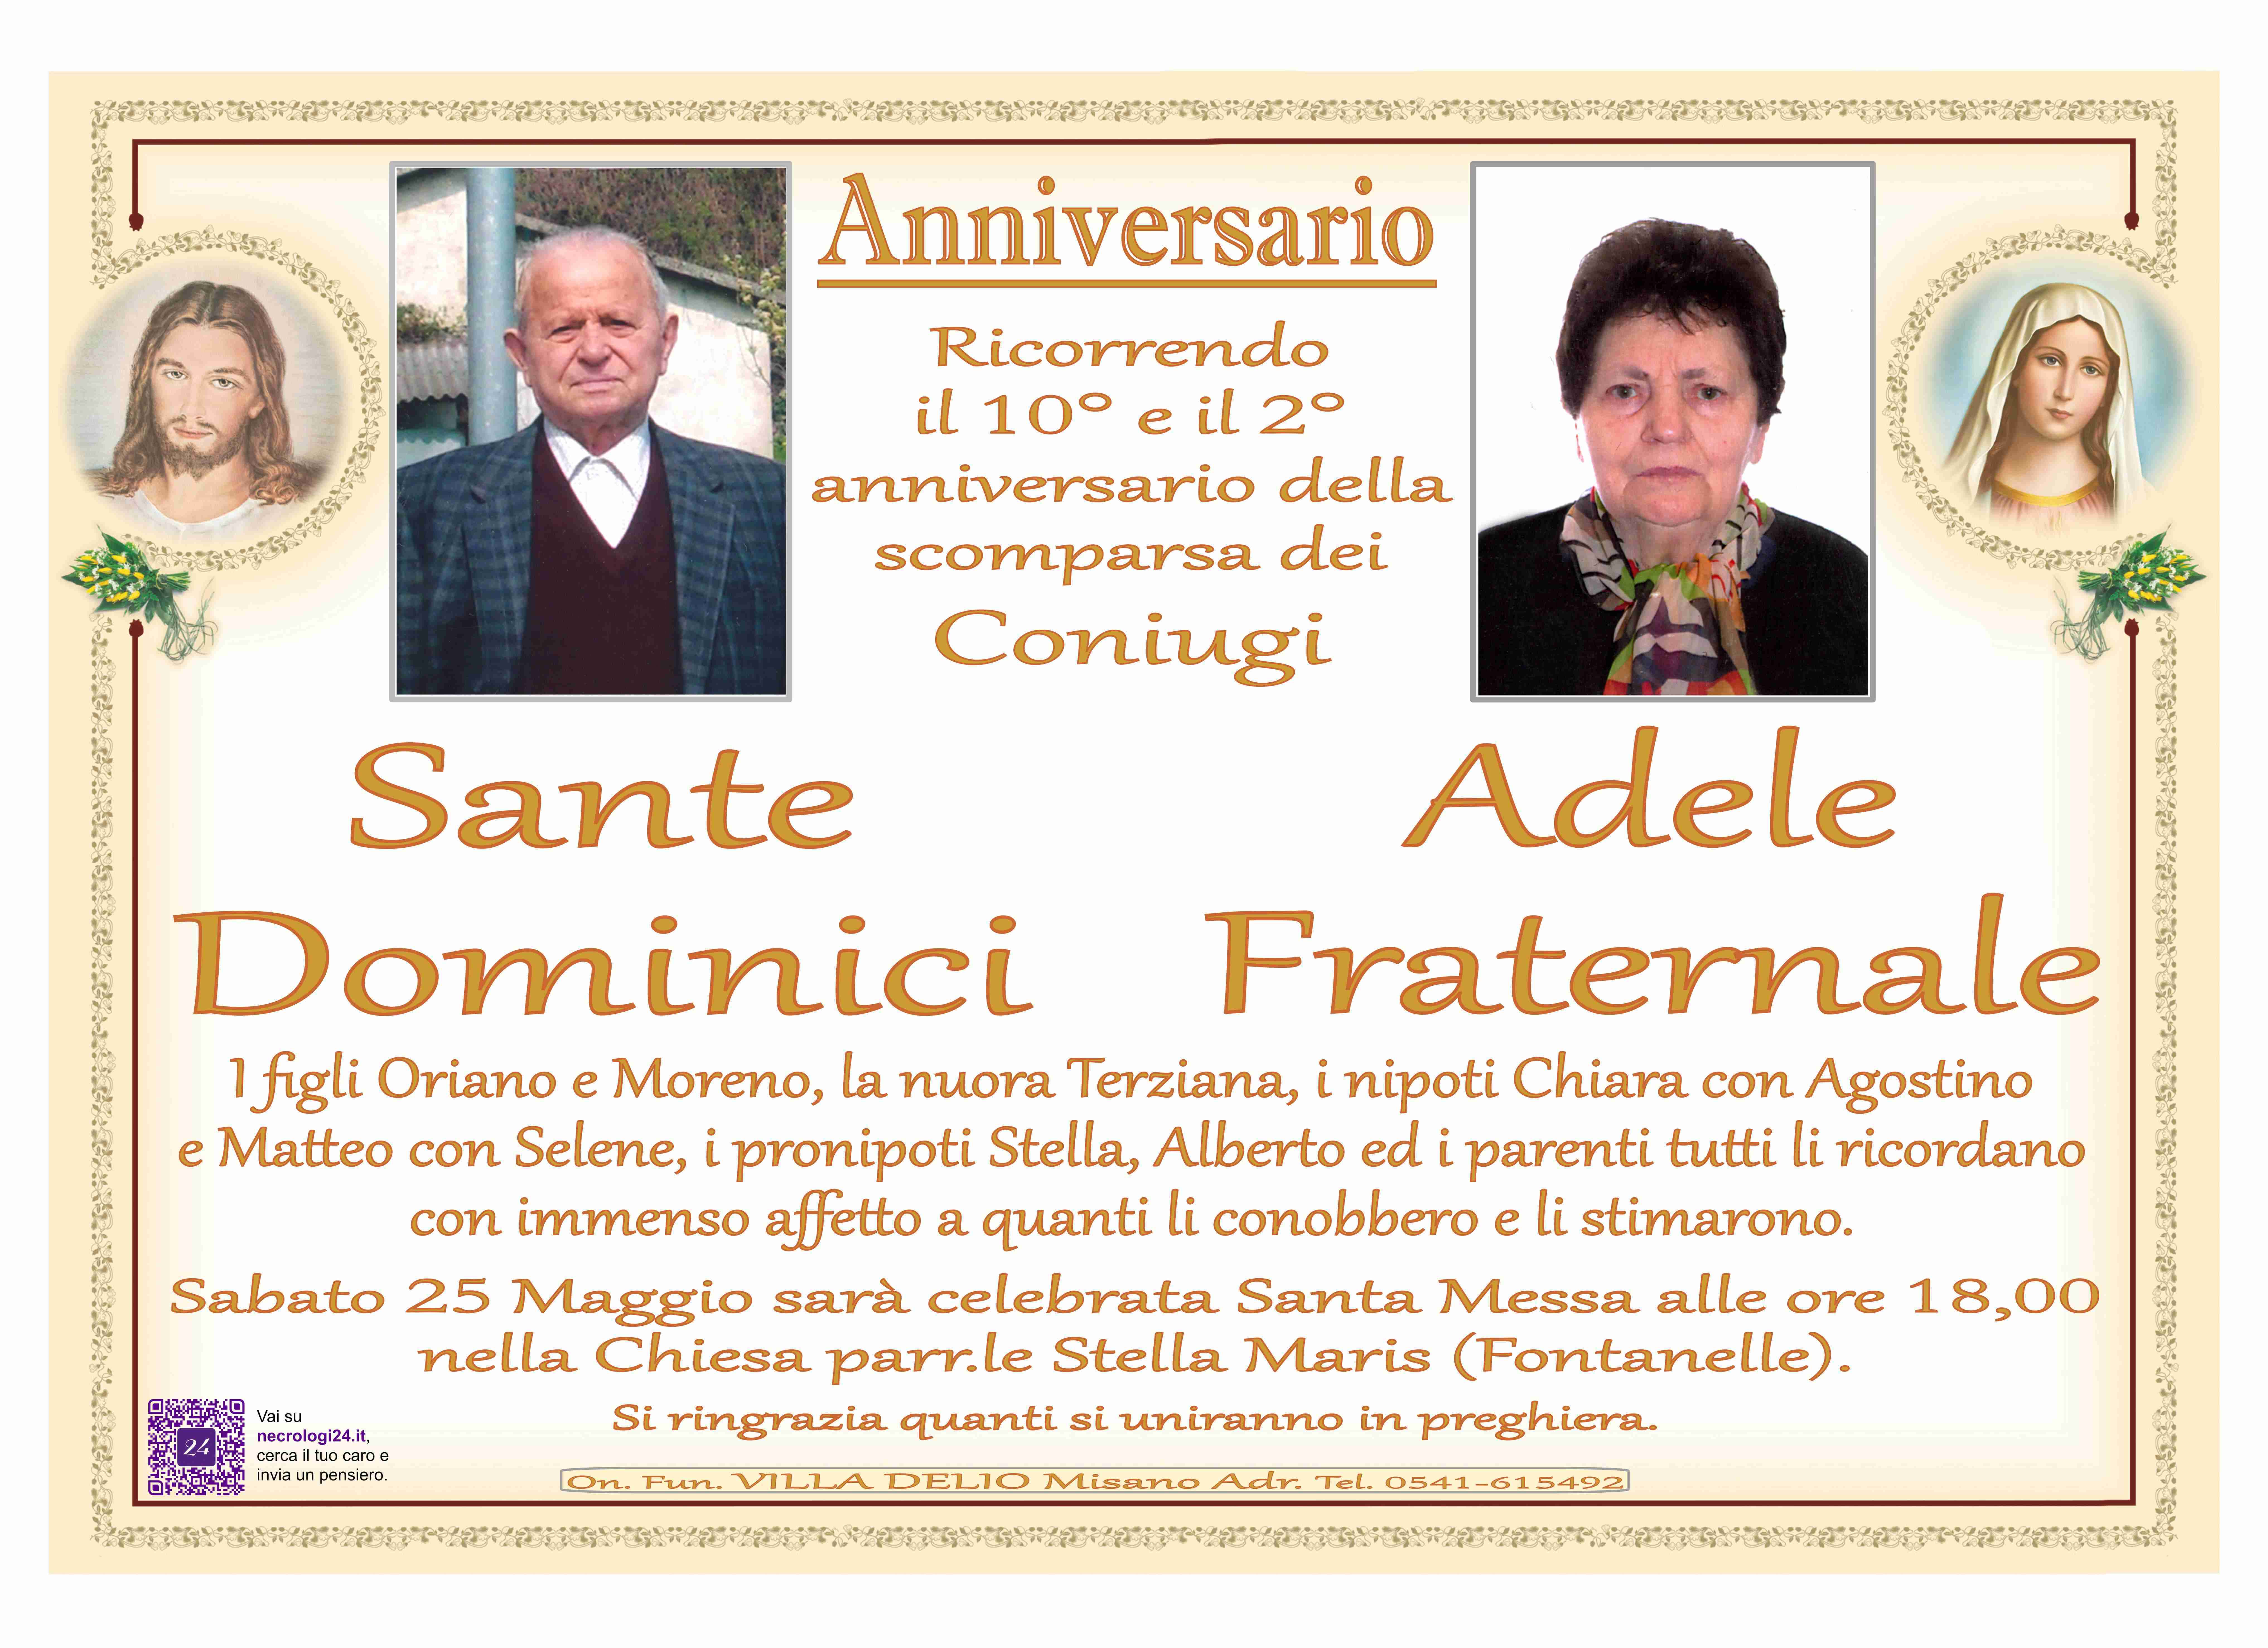 Sante Dominici e Adele Fraternale